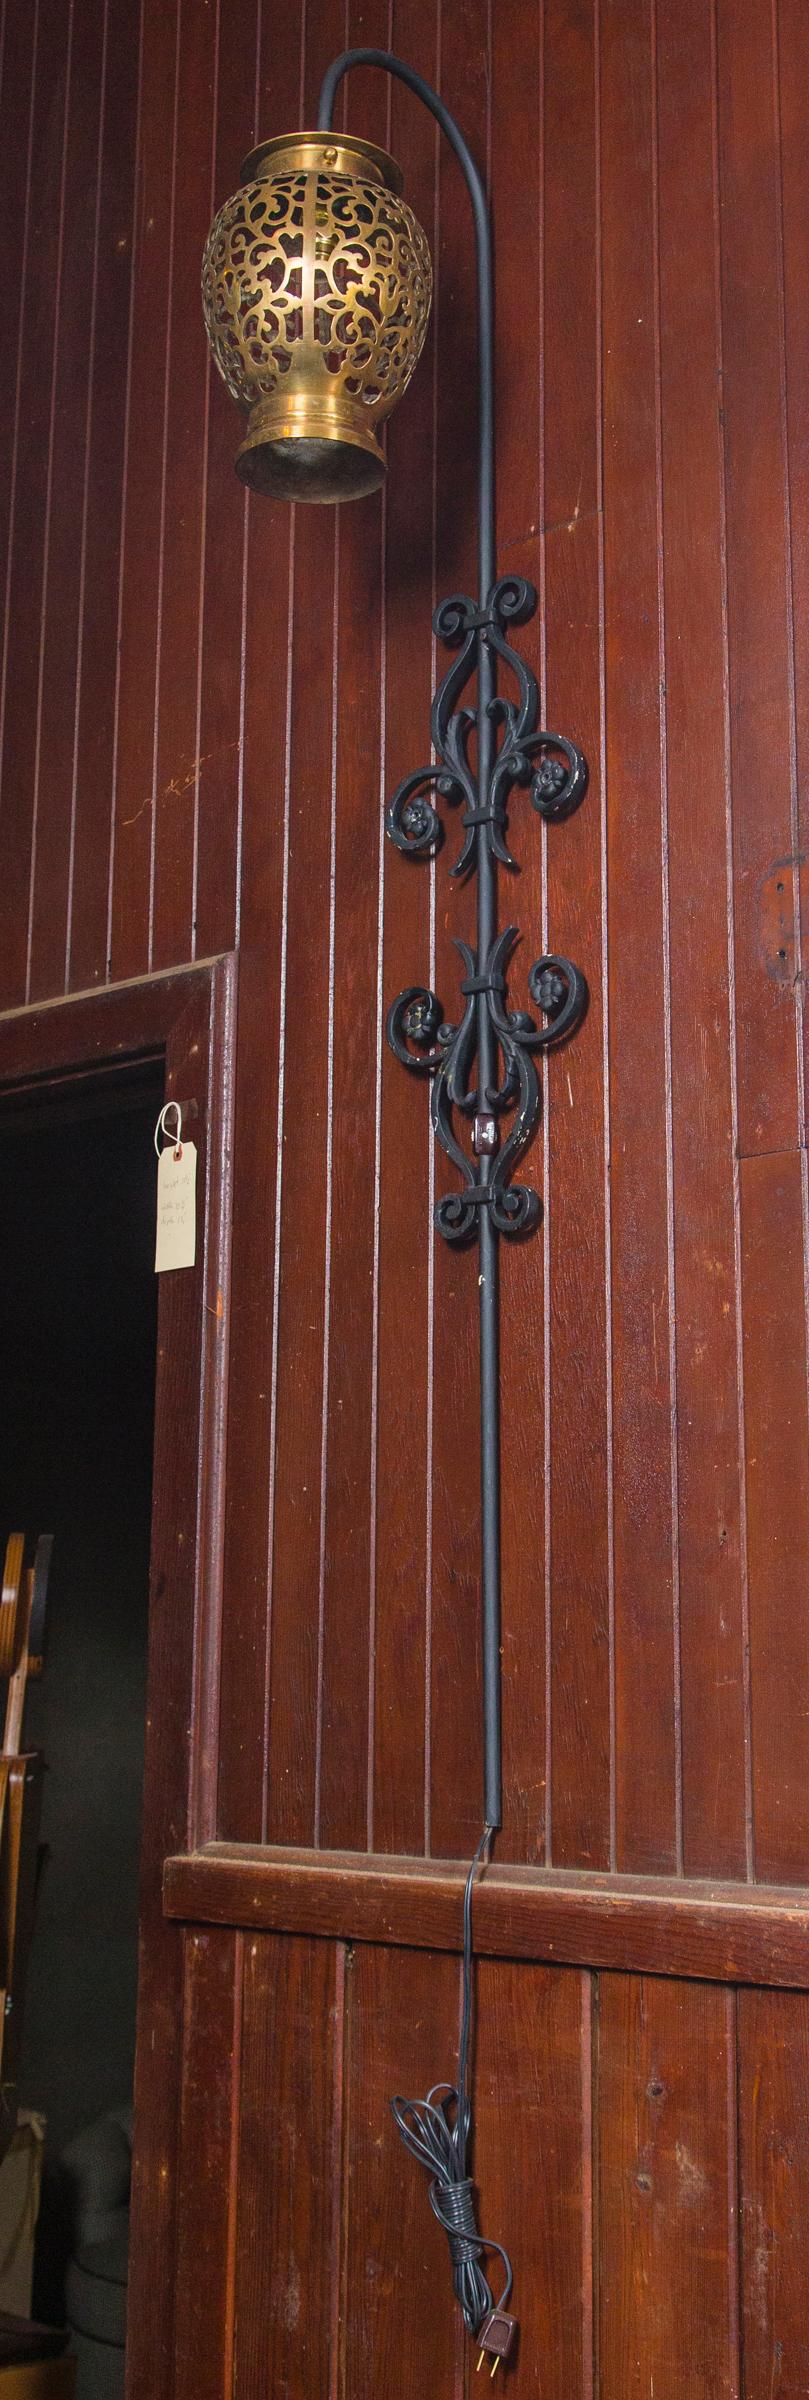 Pièce arrière décorative en fer forgé noir avec des lanternes marocaines en laiton suspendues. Chaque lanterne contient une ampoule standard. Chaque applique est munie d'un cordon à la base avec une prise murale. Chaque lanterne a un diamètre de 8